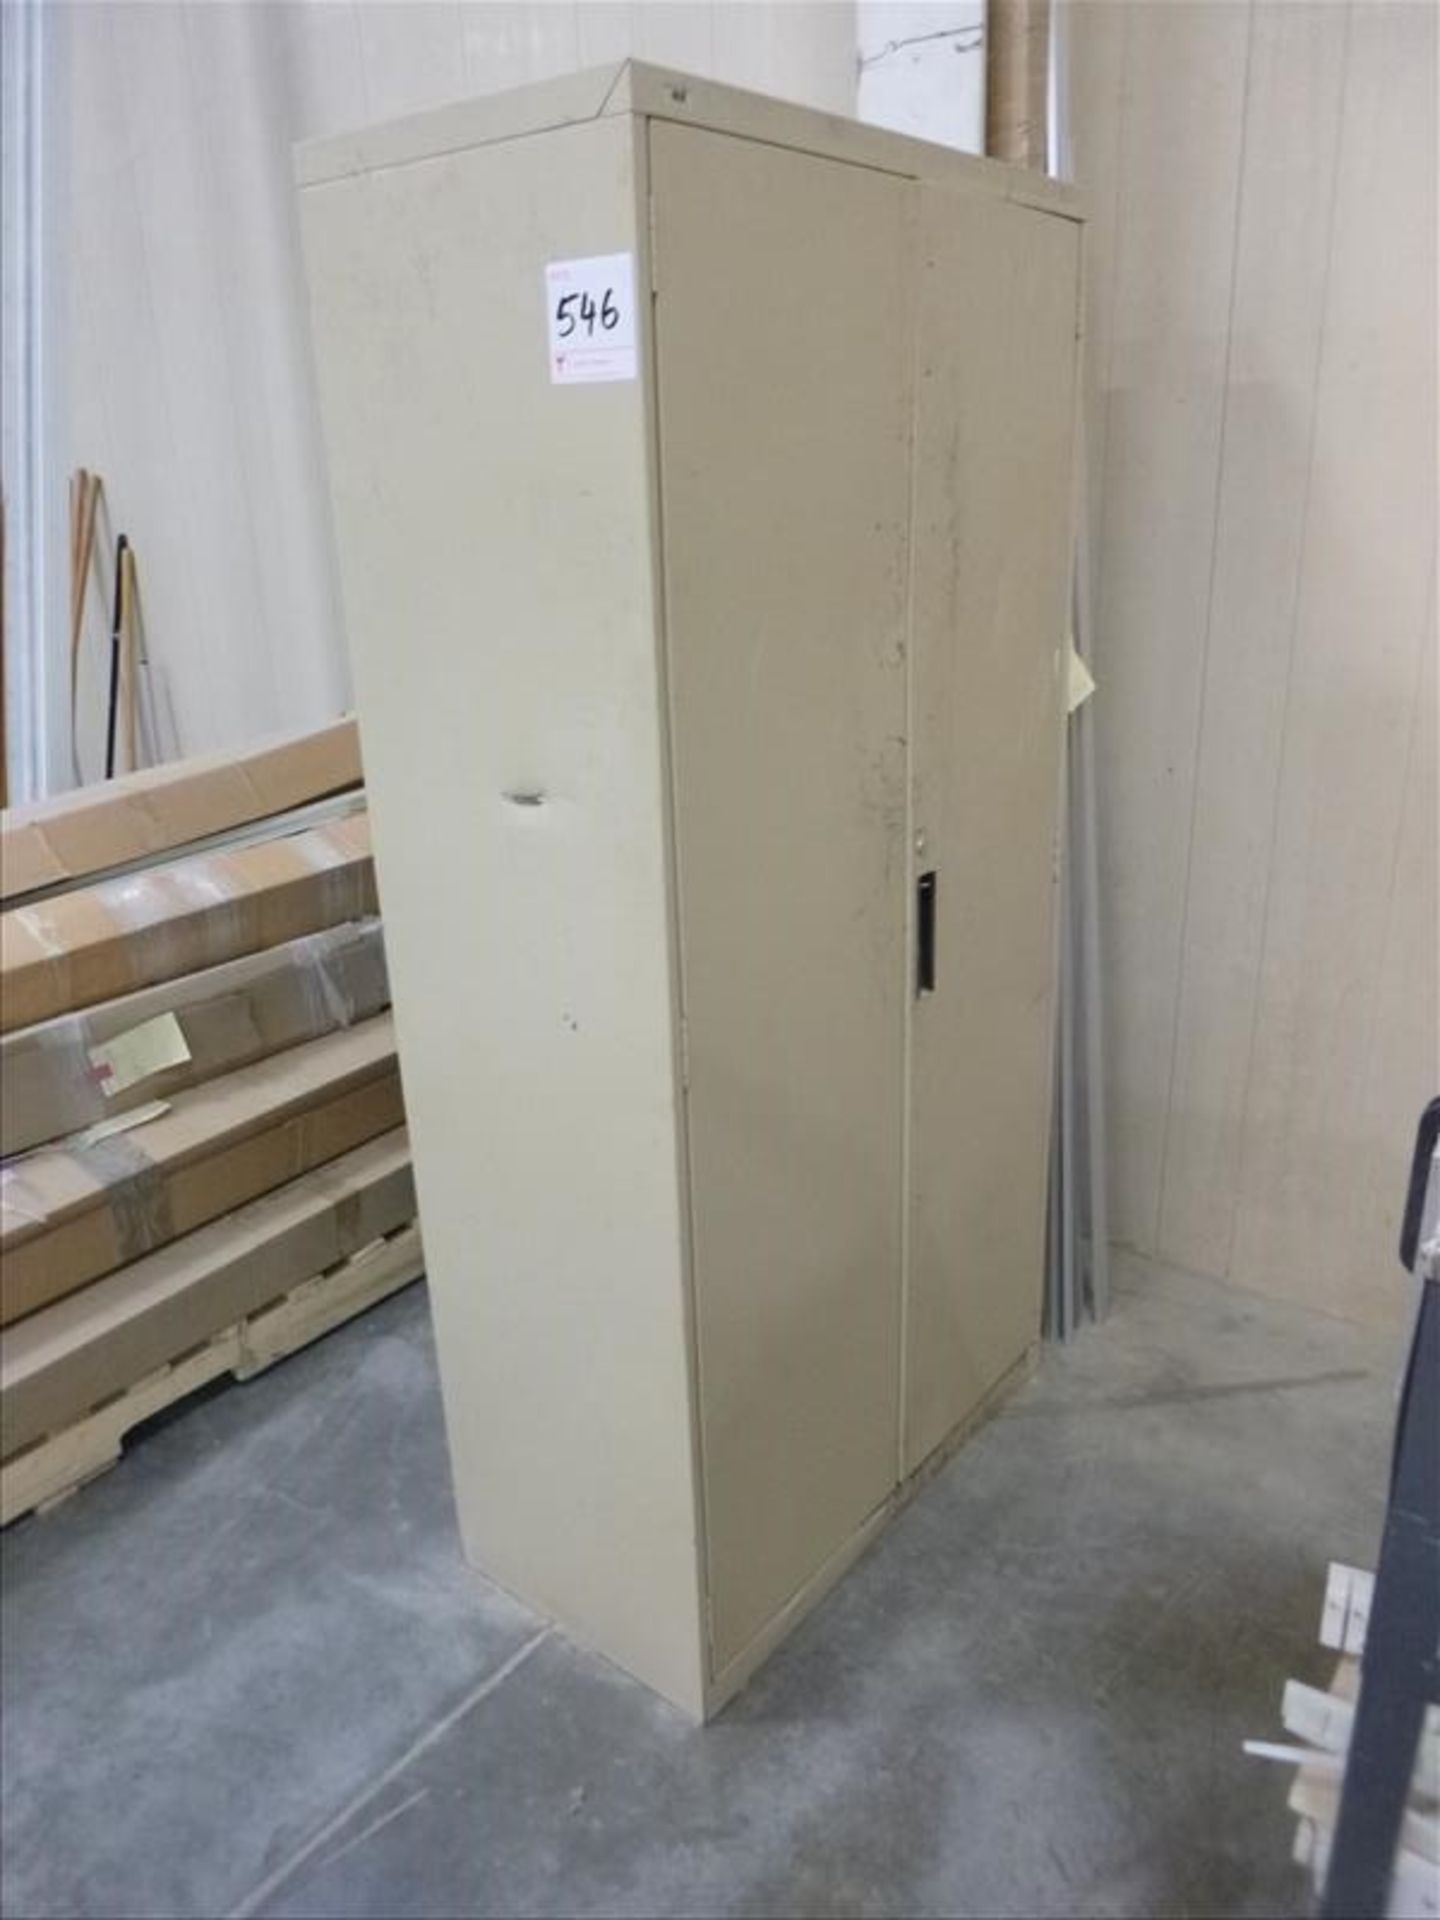 2-door storage cabinet